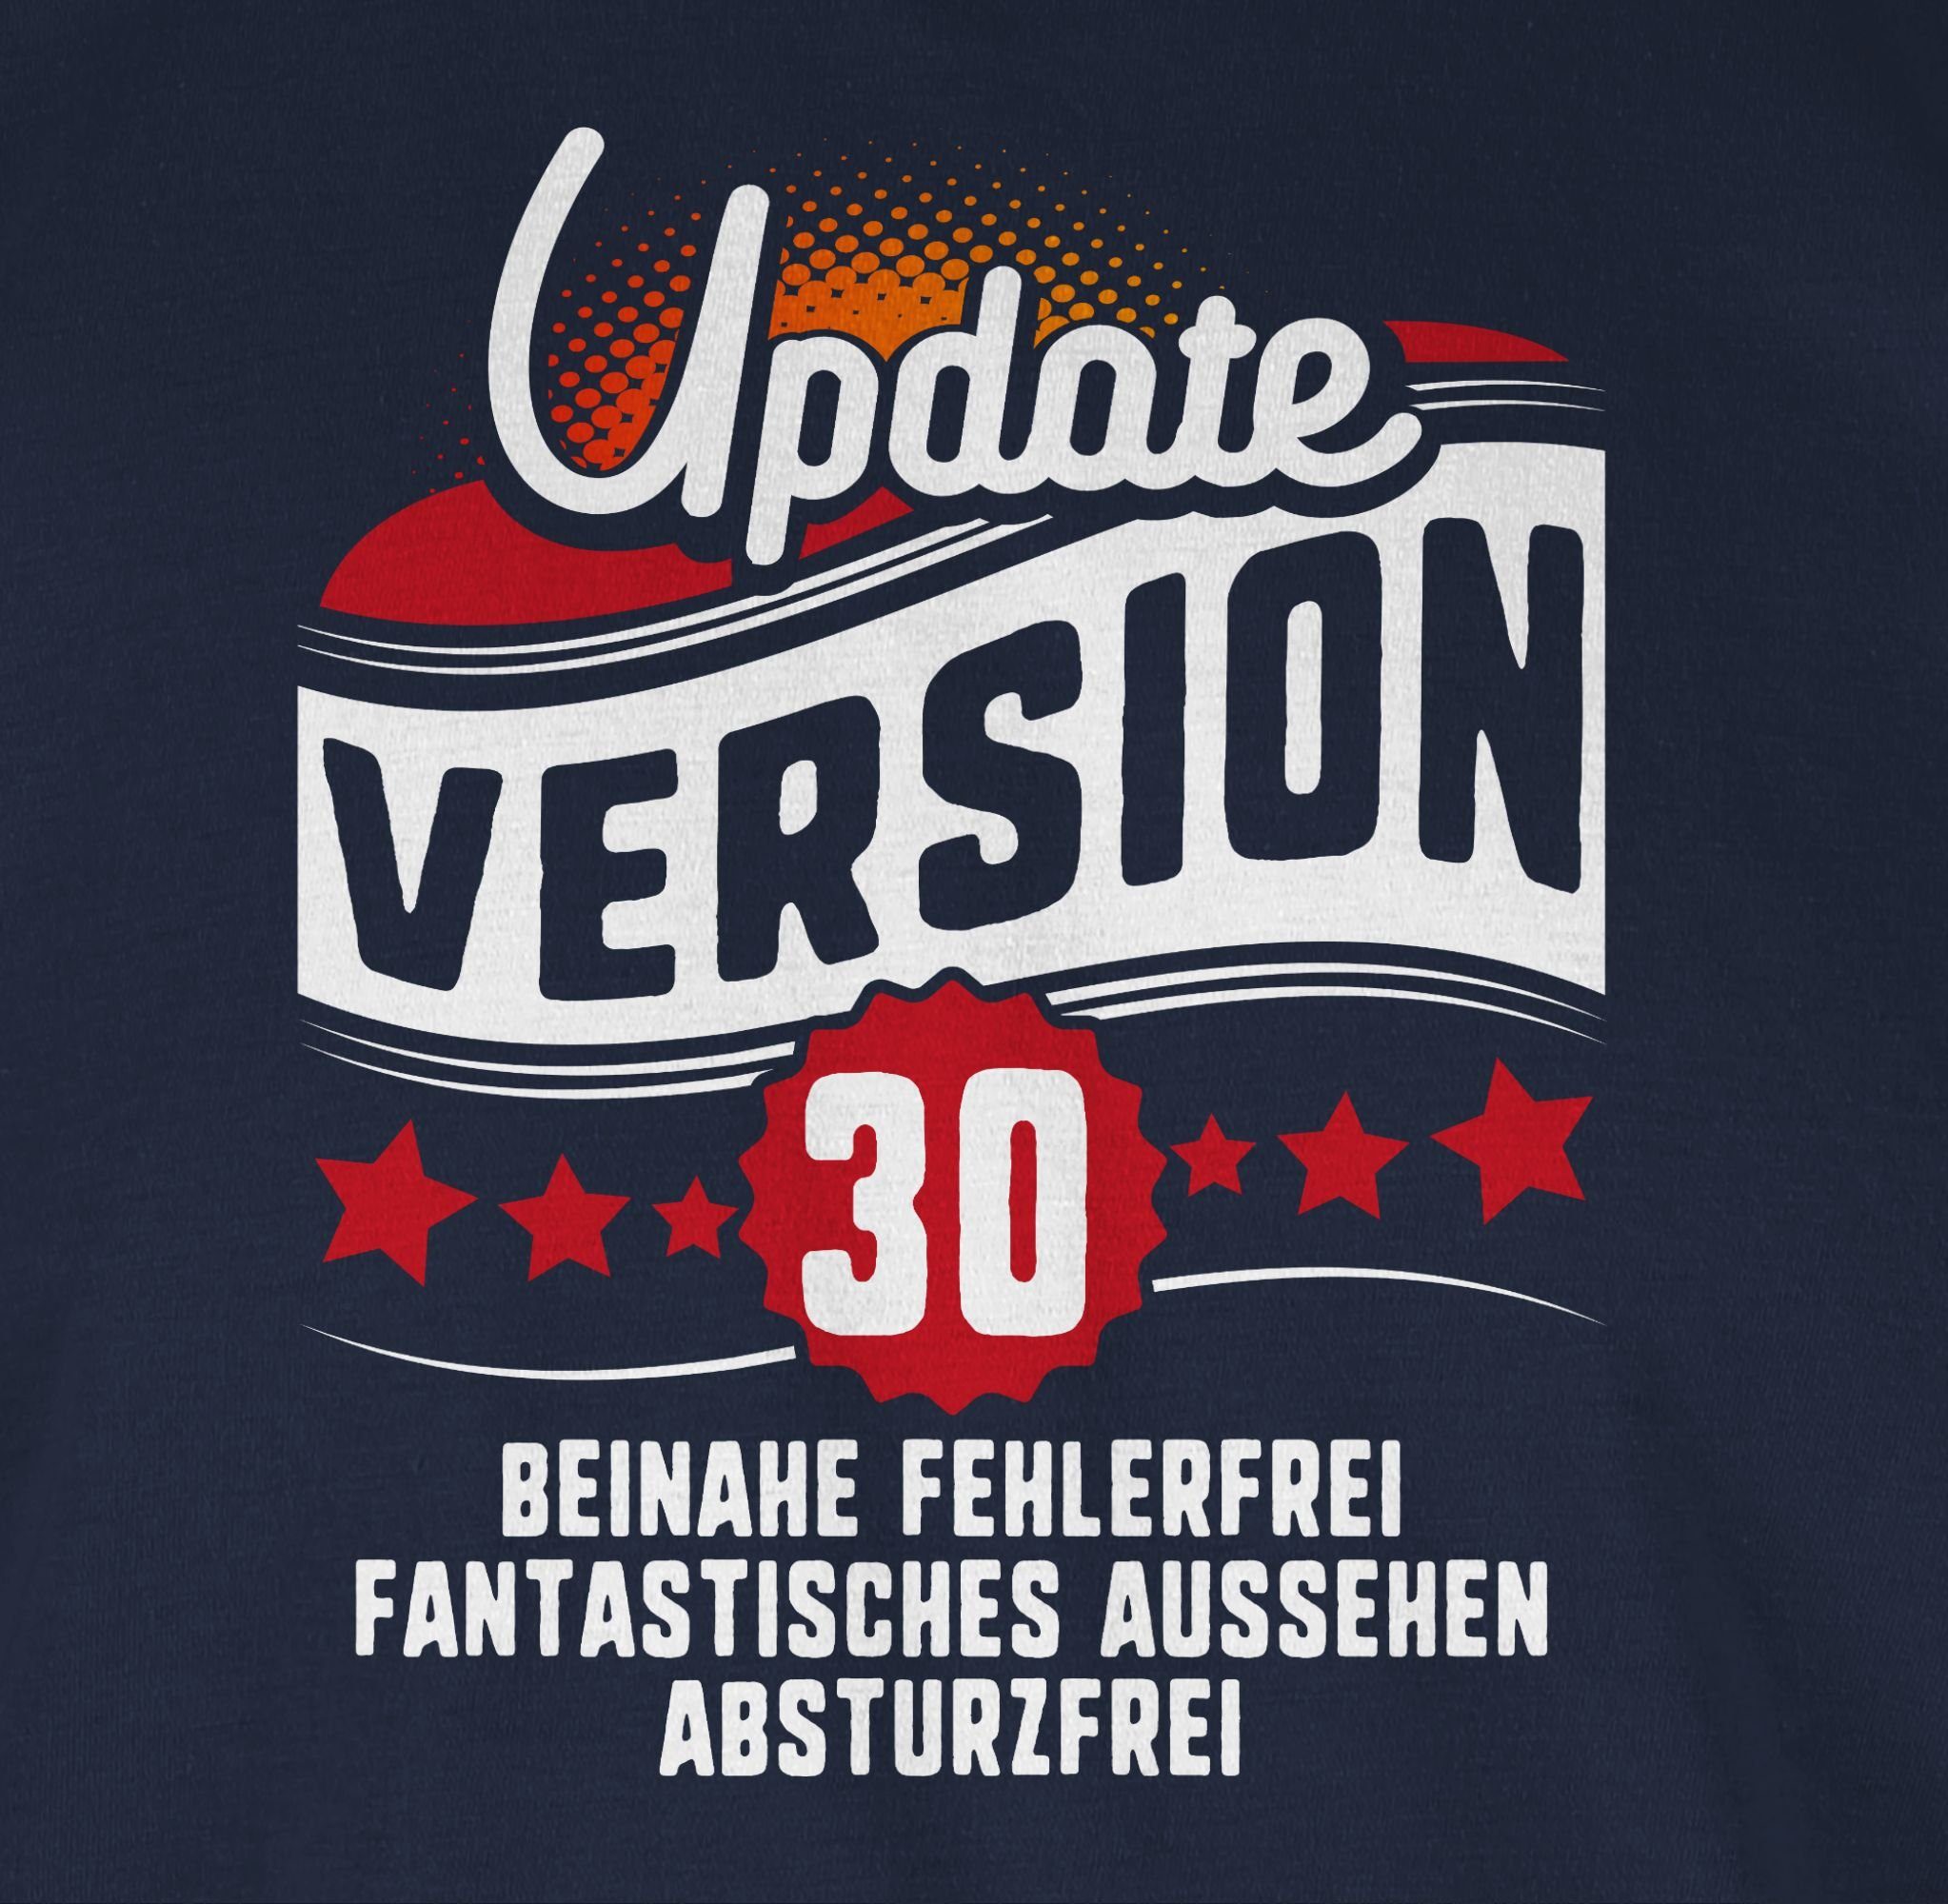 Blau Navy Geburtstag 30. Shirtracer Version Dreißigster Update 1 T-Shirt